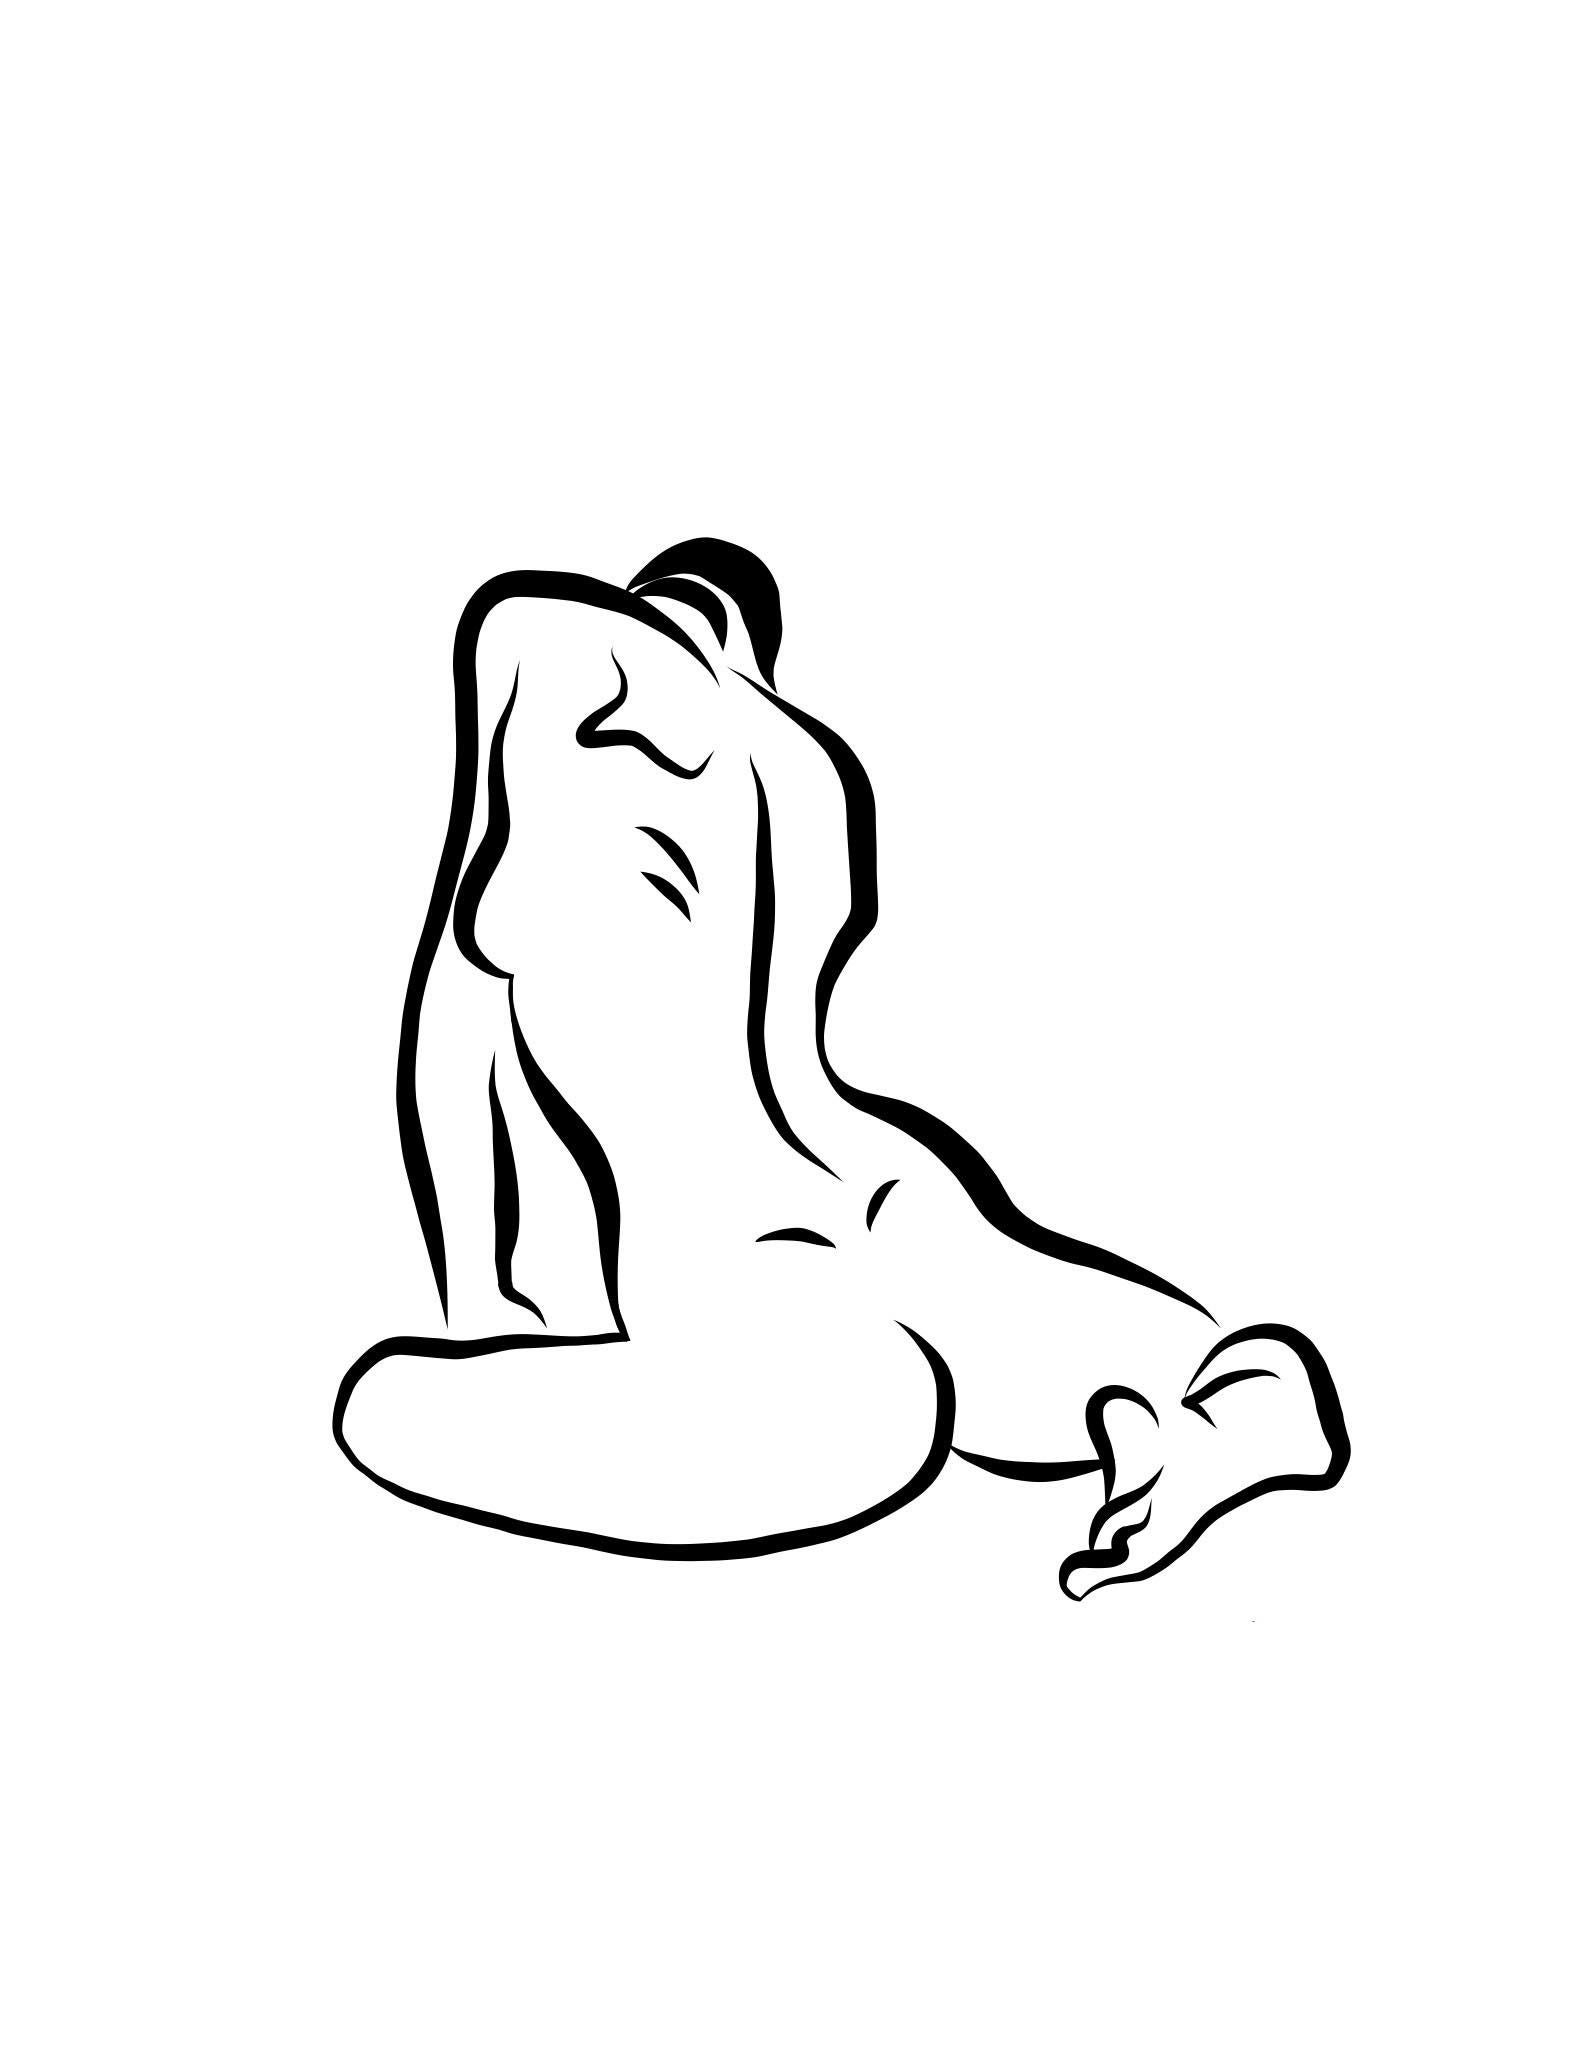 Michael Binkley Nude Print - Haiku #16 - Digital Vector Drawing Seated Female Nude Woman Figure from Behind